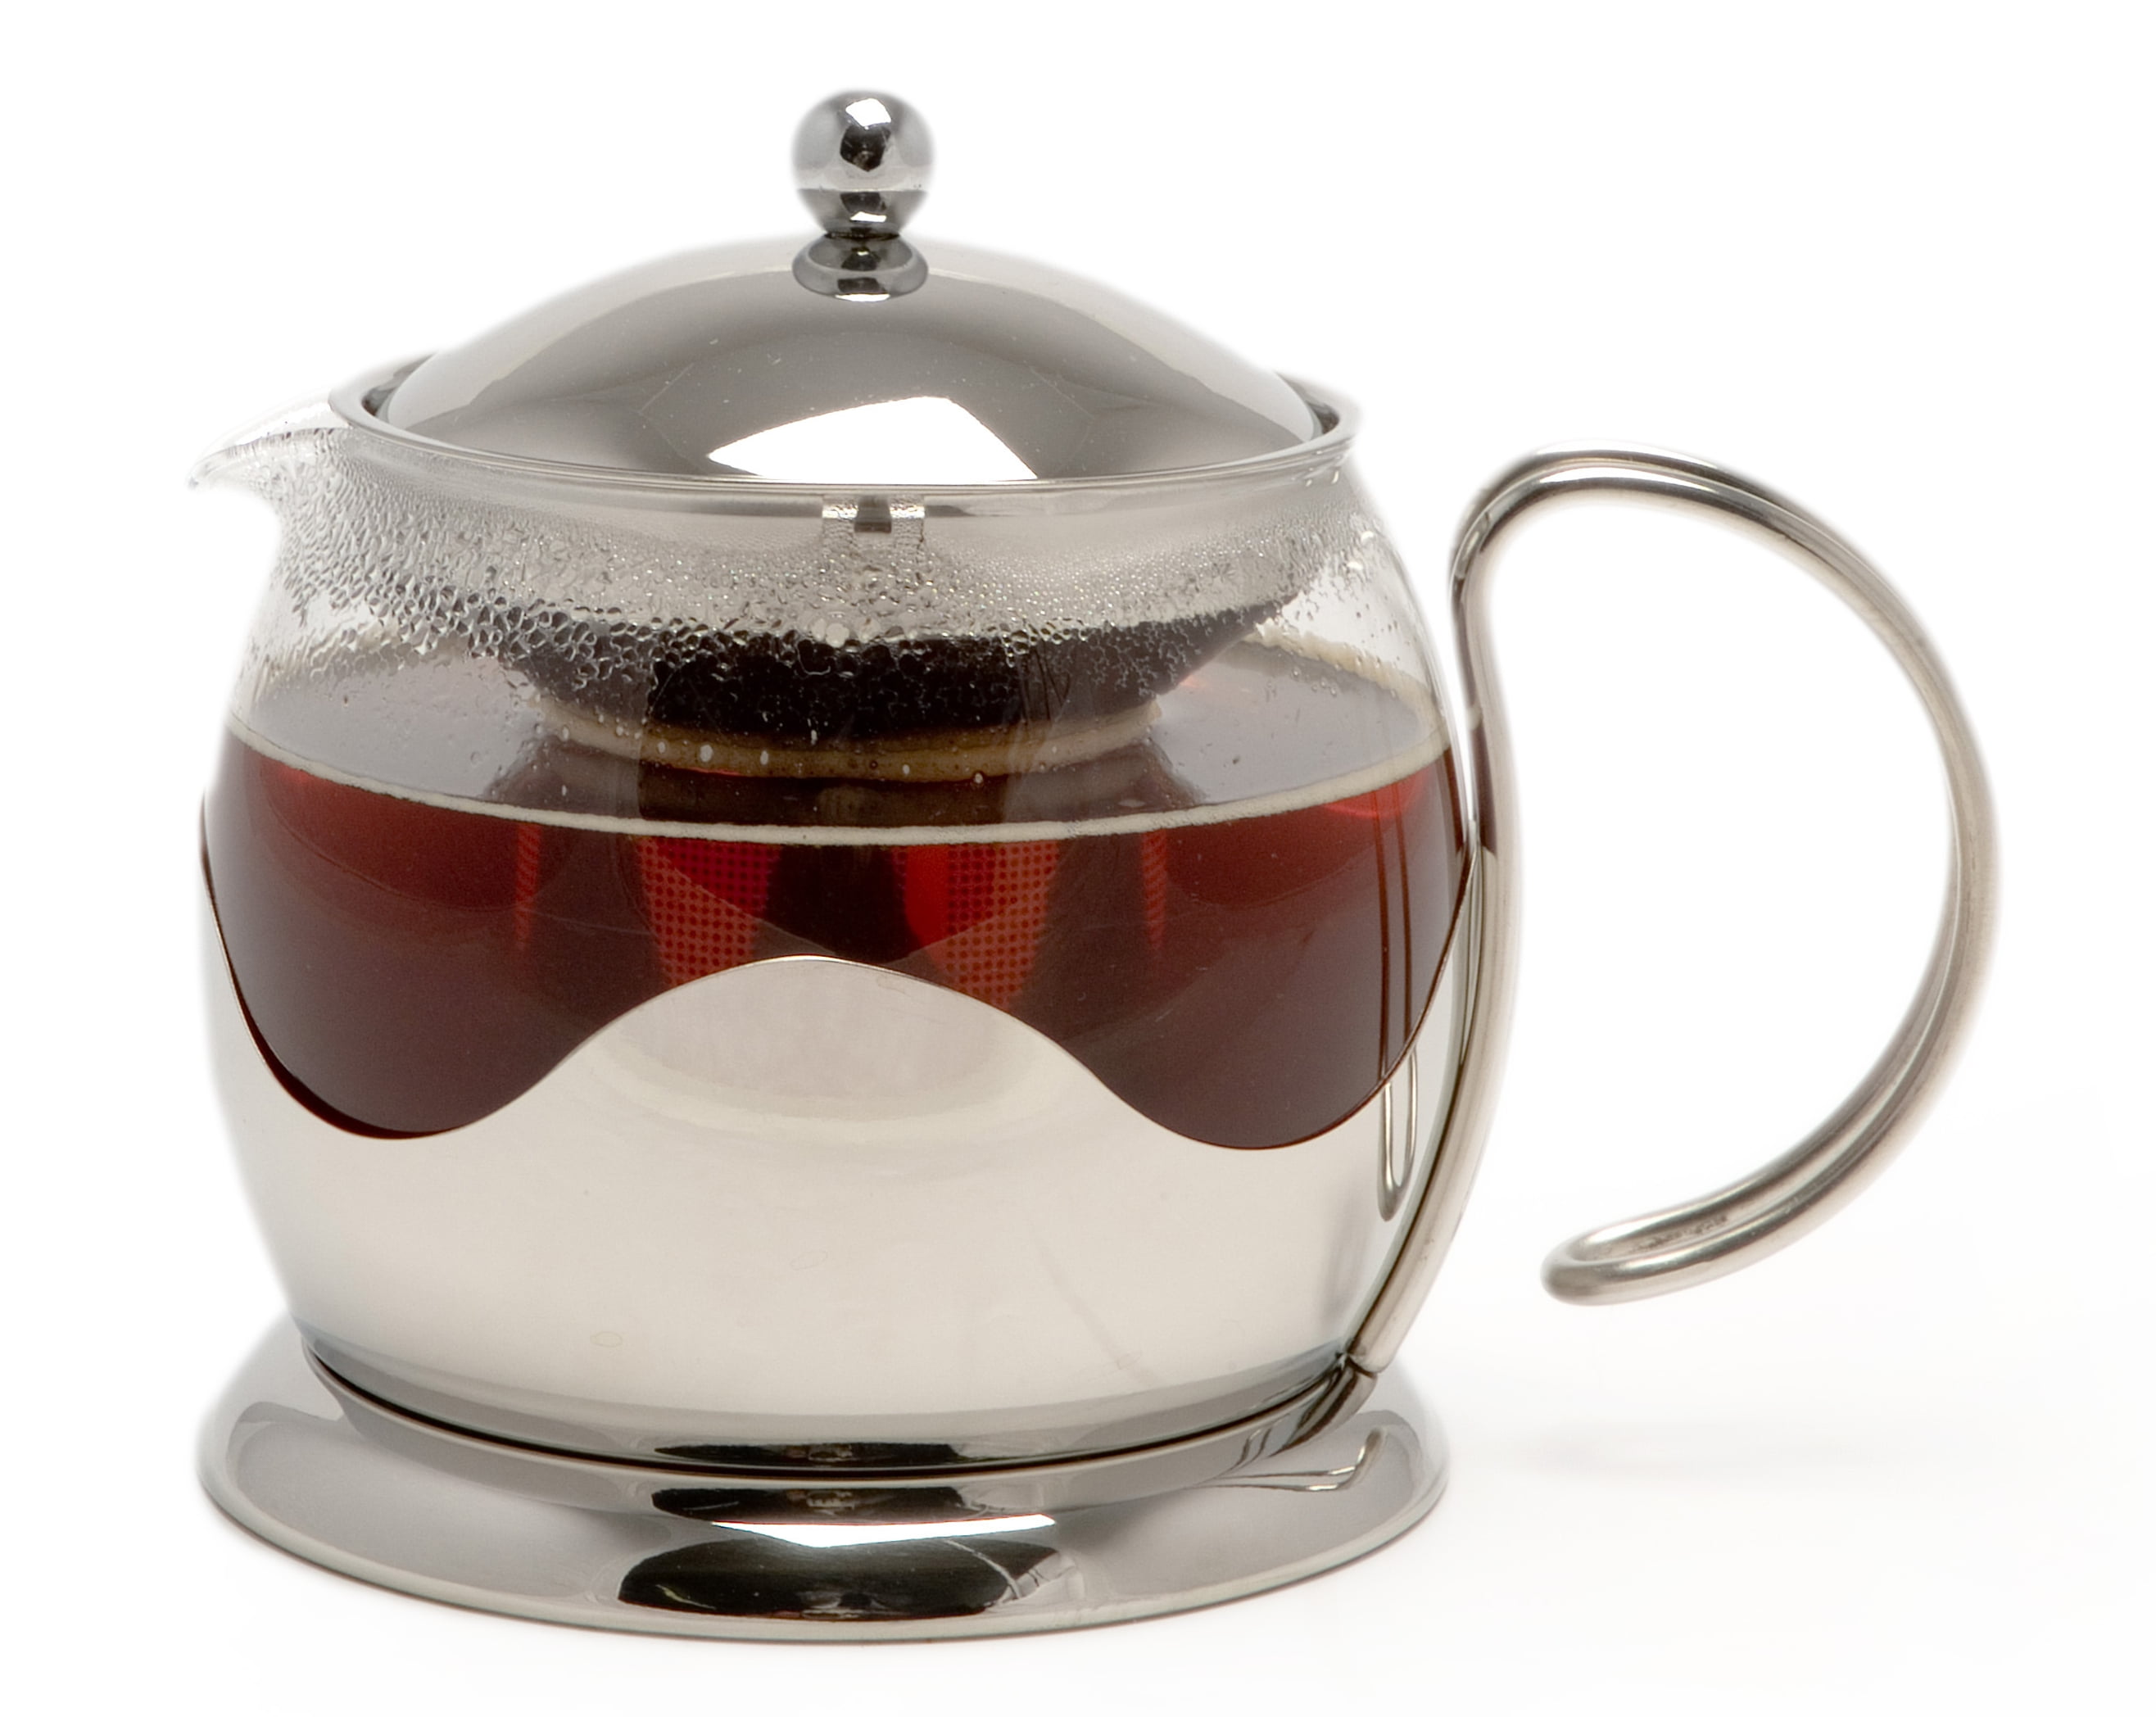 La Cafetiere Stainless Teapot Teapot Le Cup Steel 4